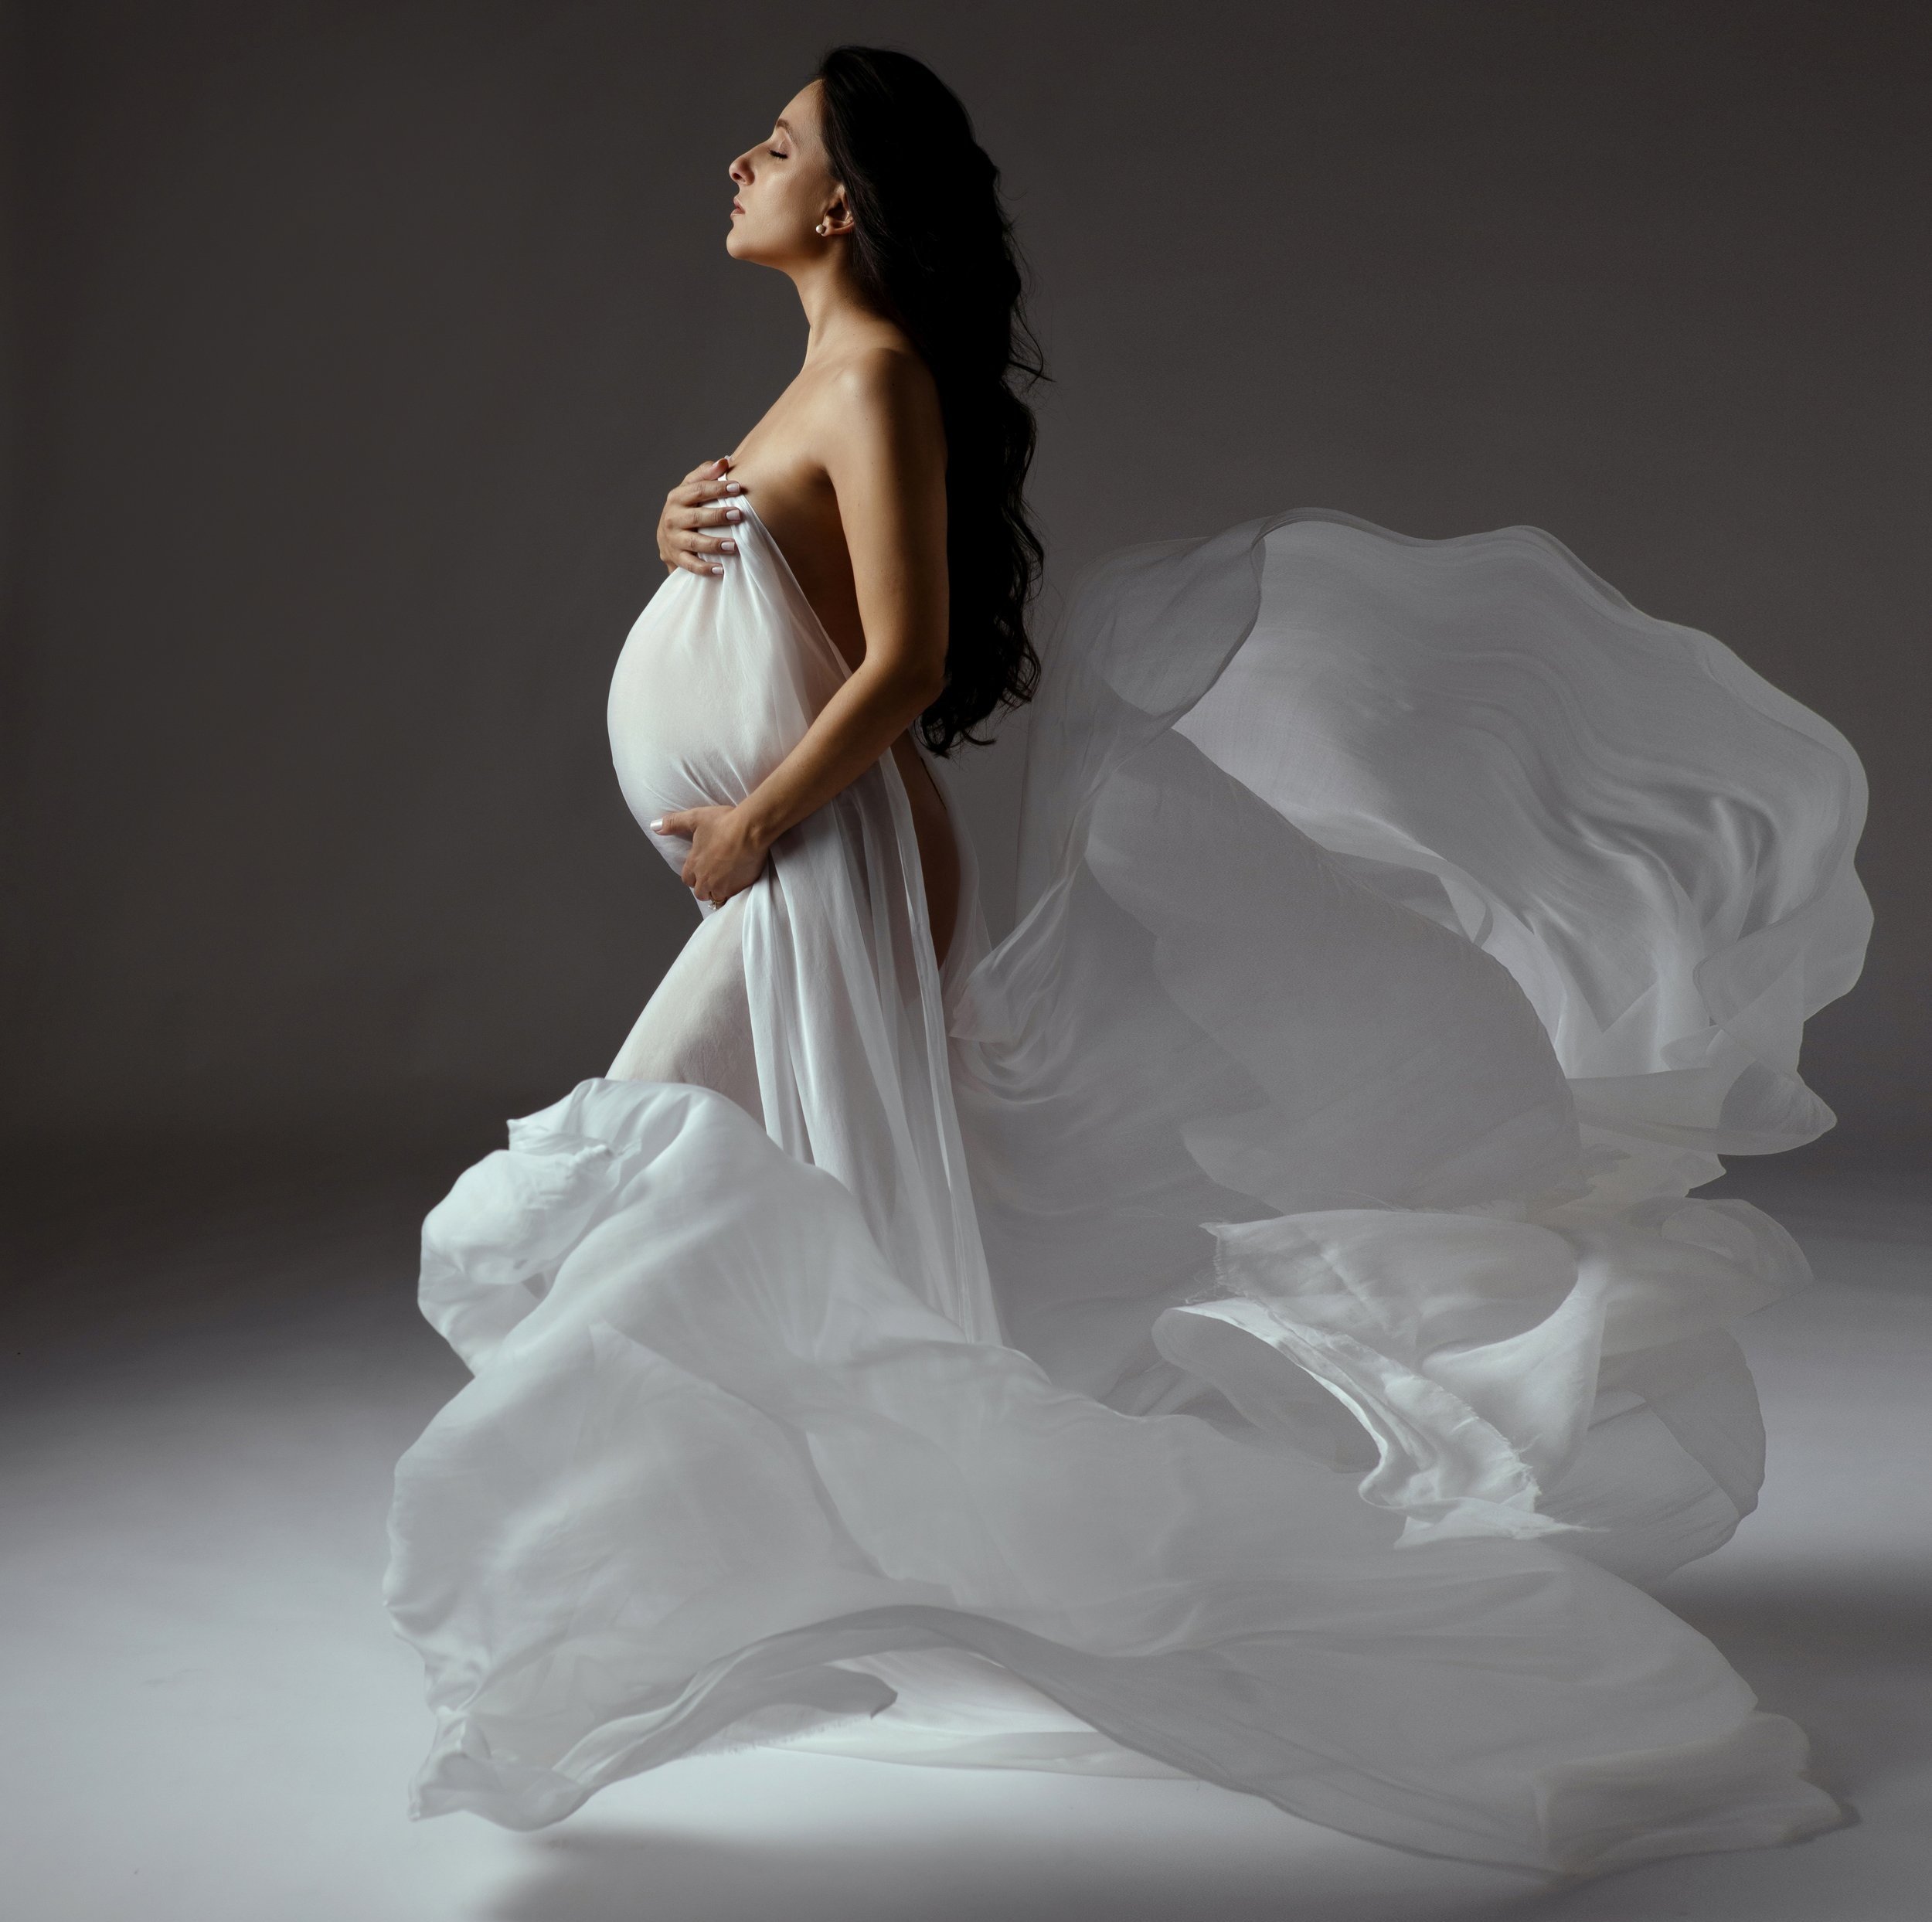 PREGNANT LADY LUXURY BOUDOIR PHOTOSHOOT BUFFALO NY, ROCHESTER NY